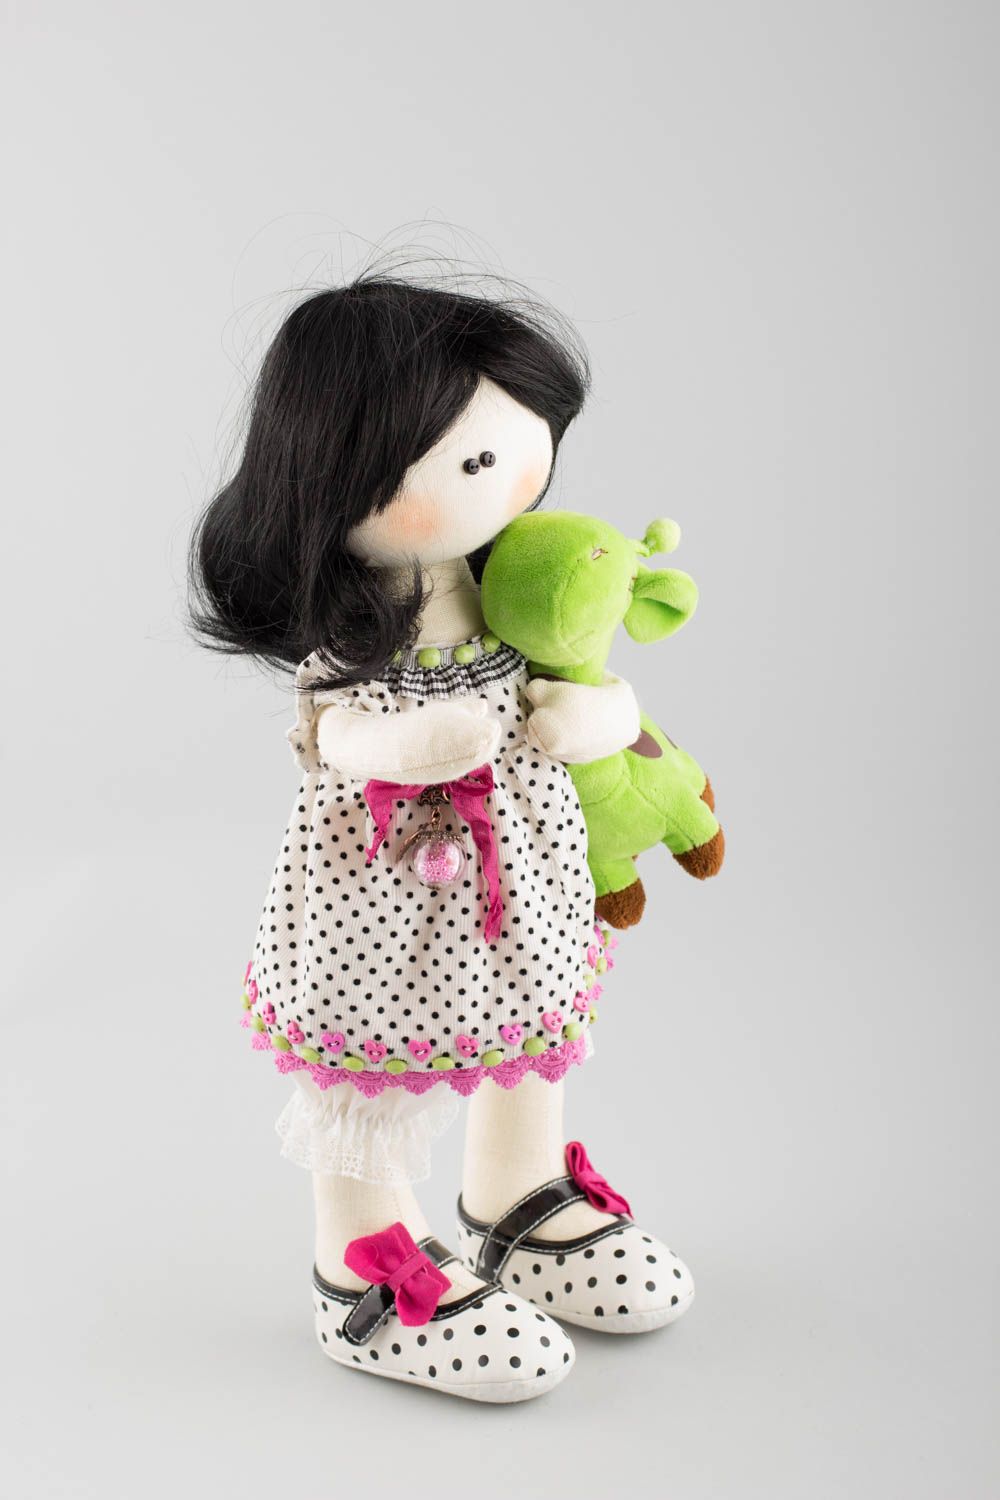 Игрушка для ребенка из натуральных материалов ручной работы Кукла с жирафом фото 3